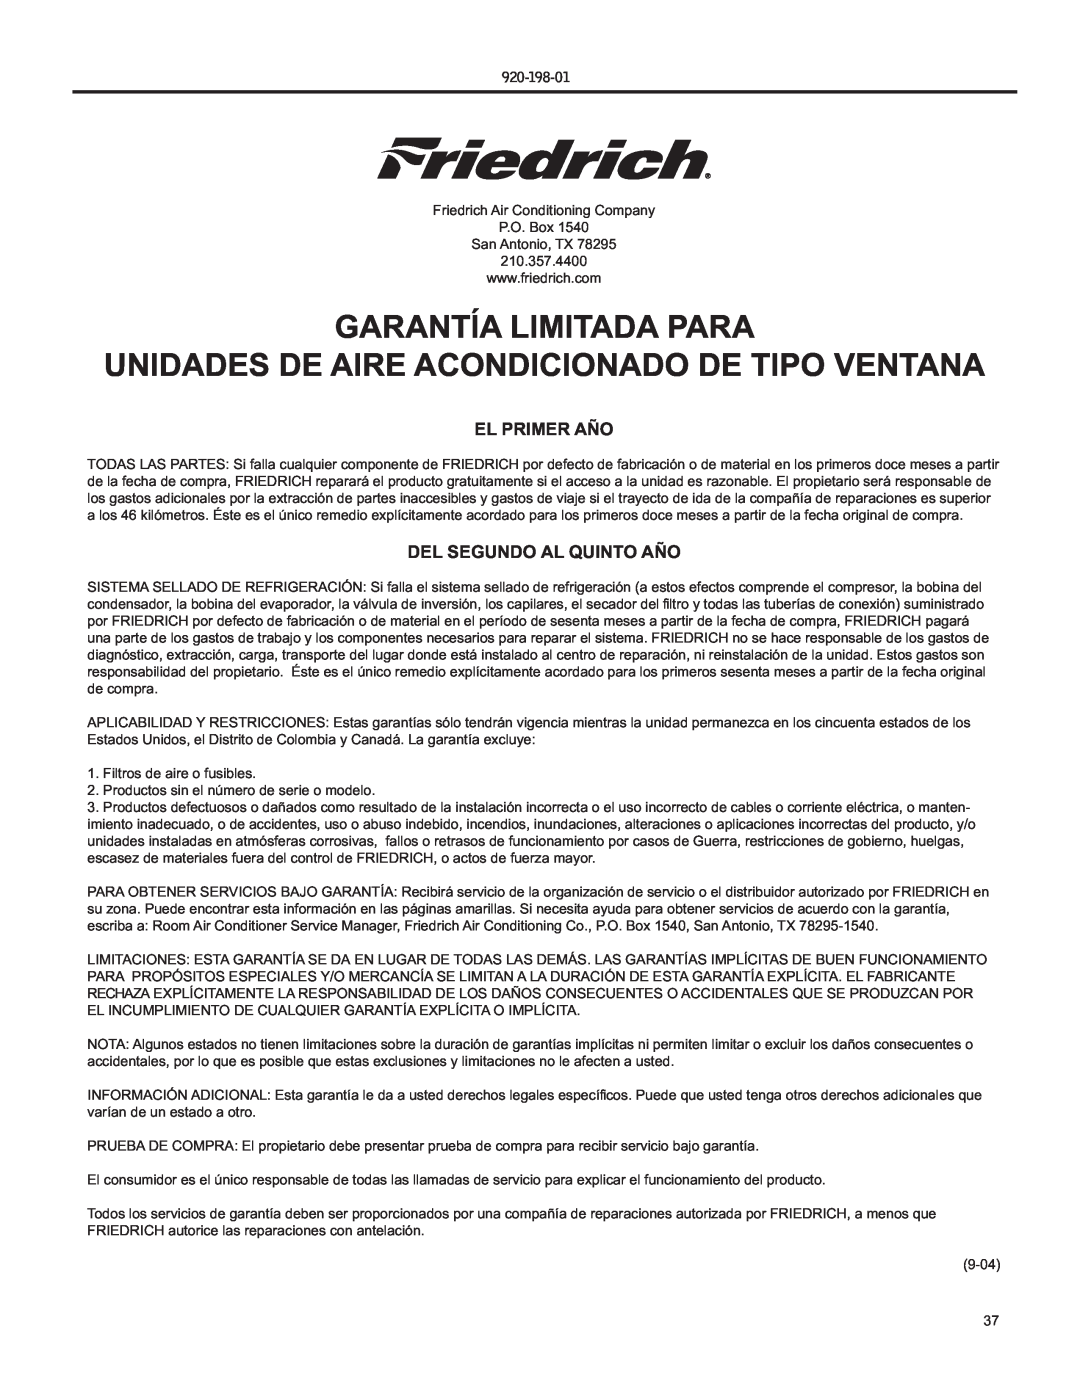 Friedrich YS09 Garantía Limitada Para, Unidades De Aire Acondicionado De Tipo Ventana, El Primer Año, 920-198-01 